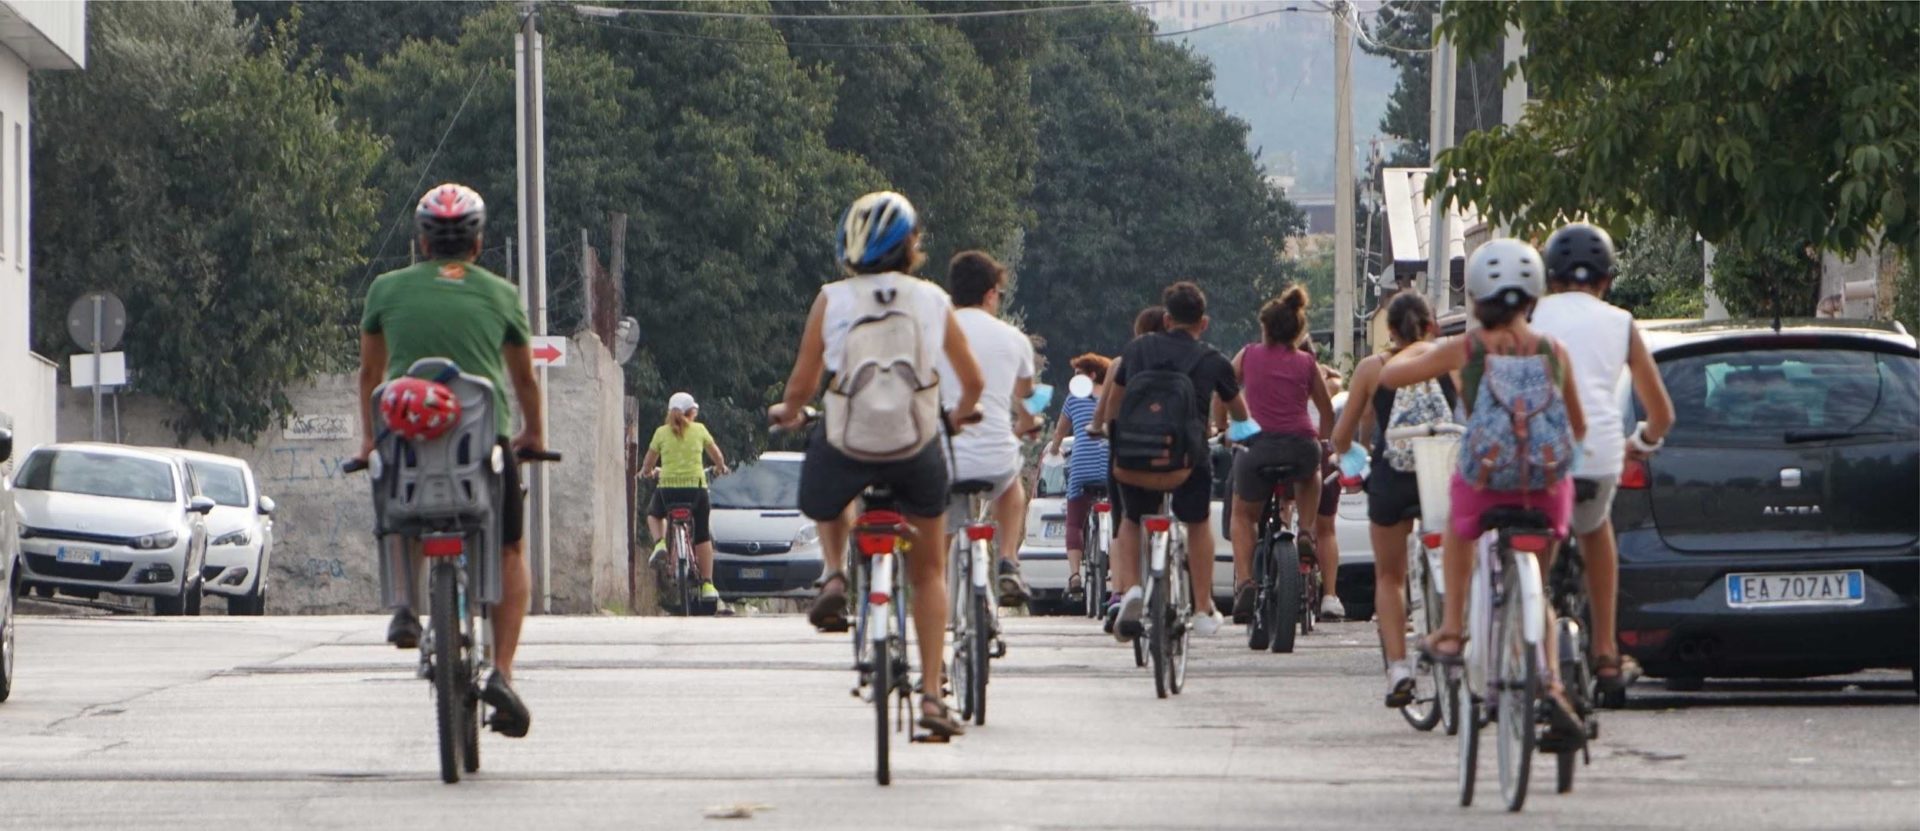 Bike Tour attraverso la Greenway fra Palermo e Monreale